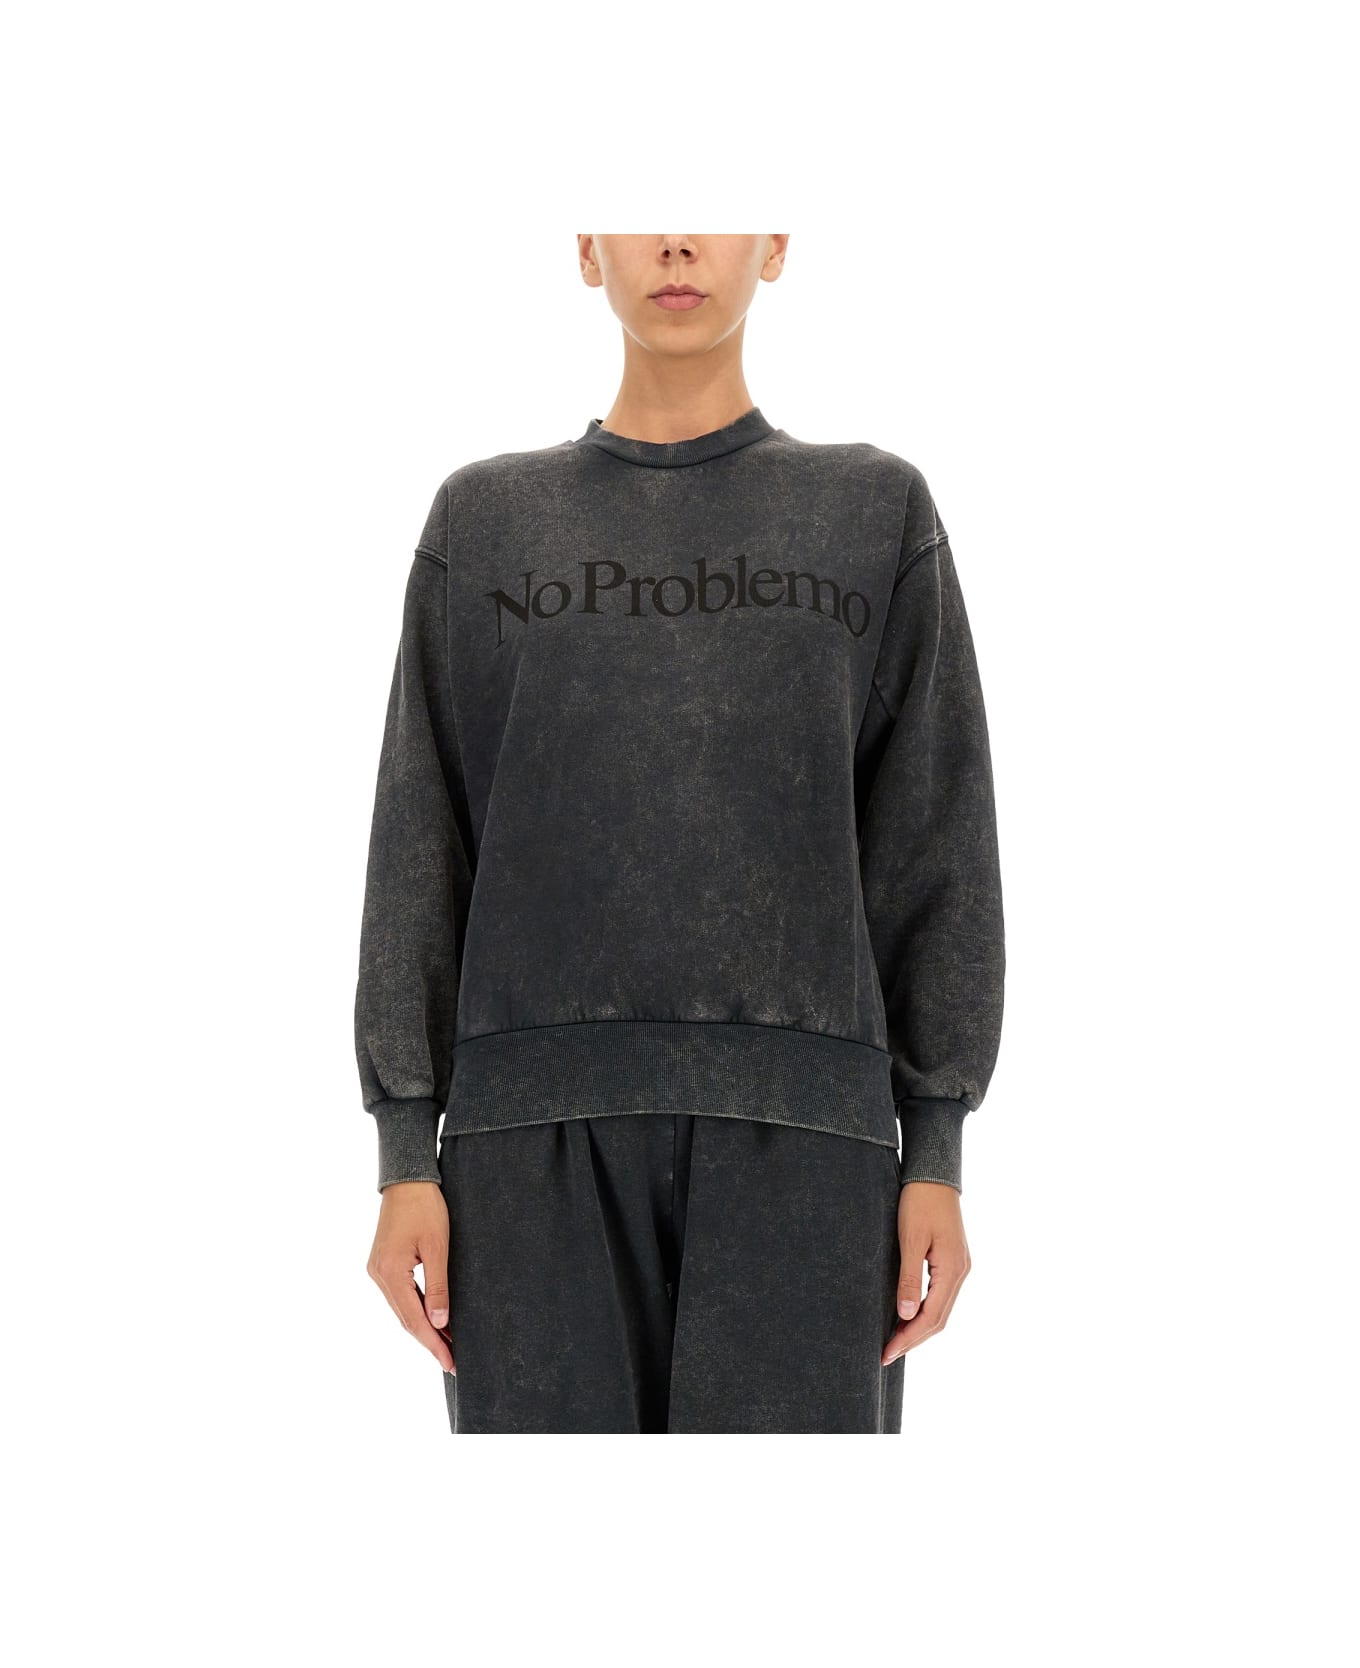 Aries "no Problemo" Print Sweatshirt - BLACK